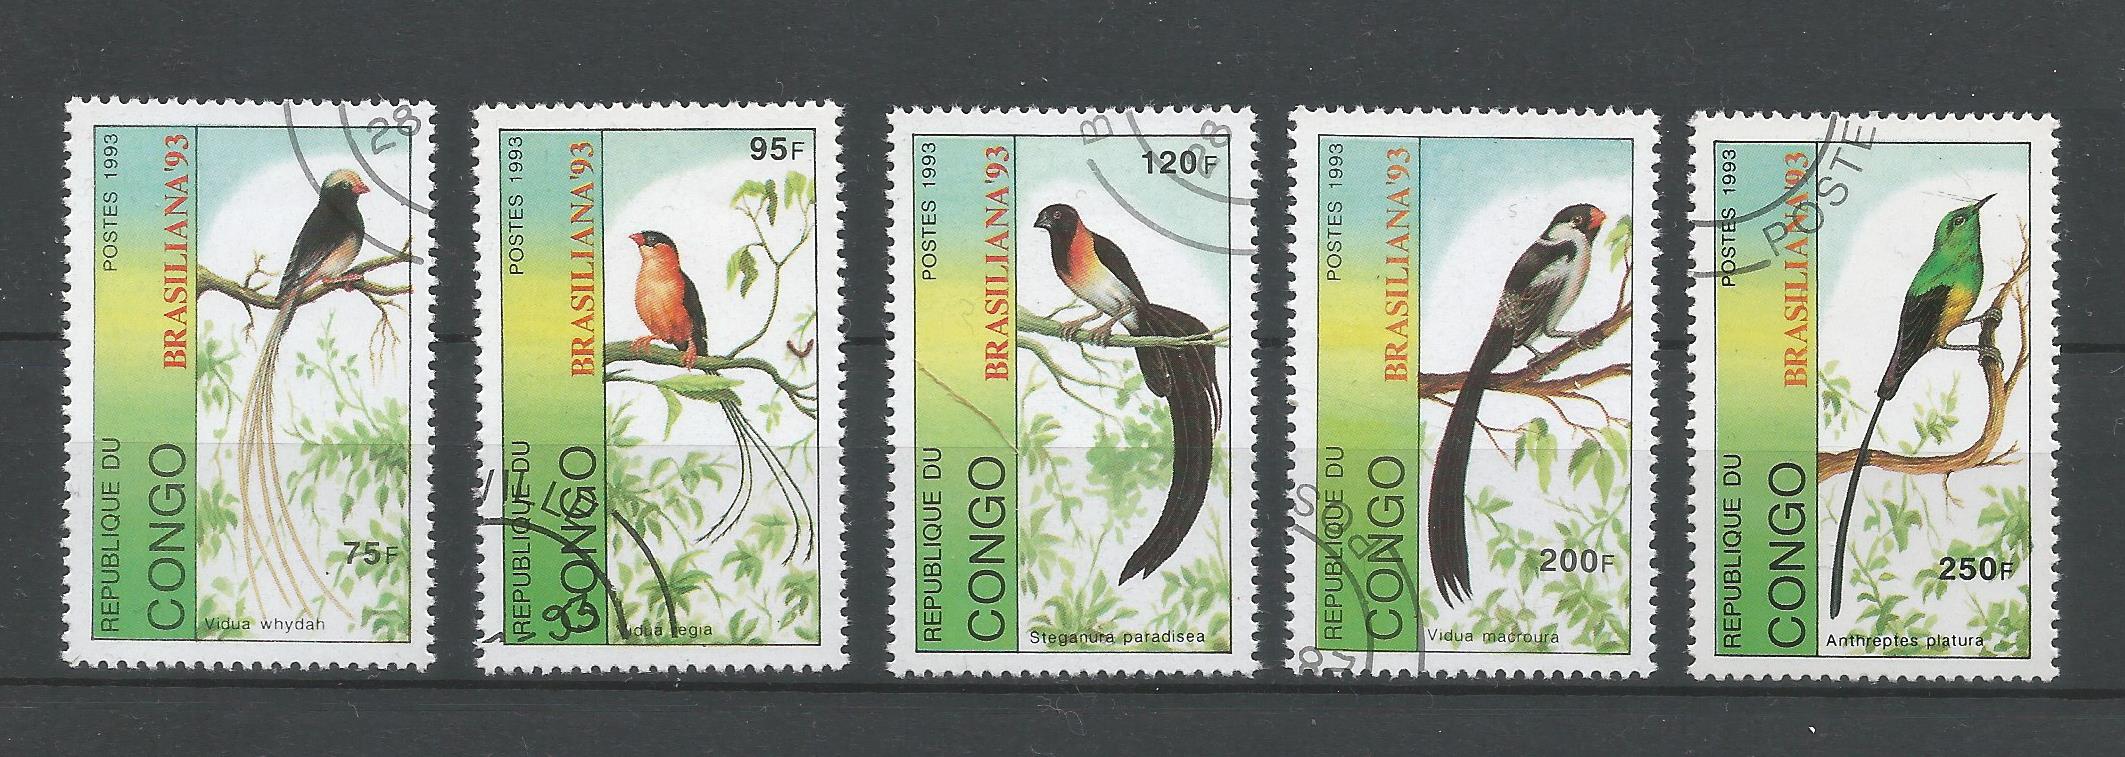 51135 - REPUBBLICA DEL CONGO - 1993 - Uccelli - Brasiliana  93 - Serie compl 5 val. timbrati - Michel : 1392/96 - Yvert : 982/86 - (CON002)